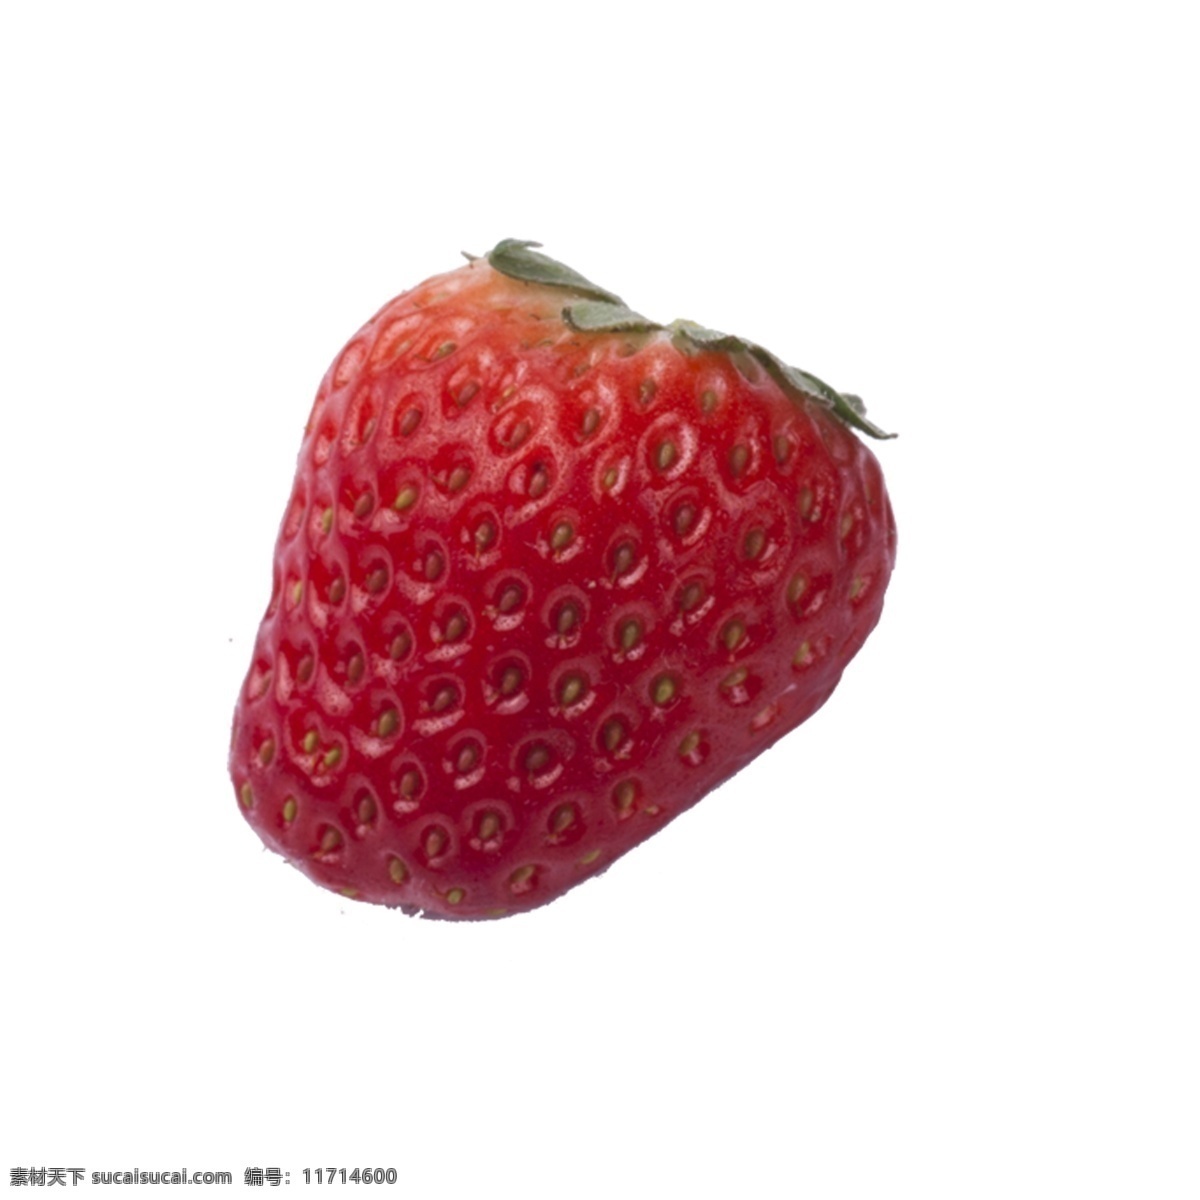 颗 新鲜 草莓 免 扣 图 好吃 新鲜的草莓 奶油 免扣图 红色 一颗草莓